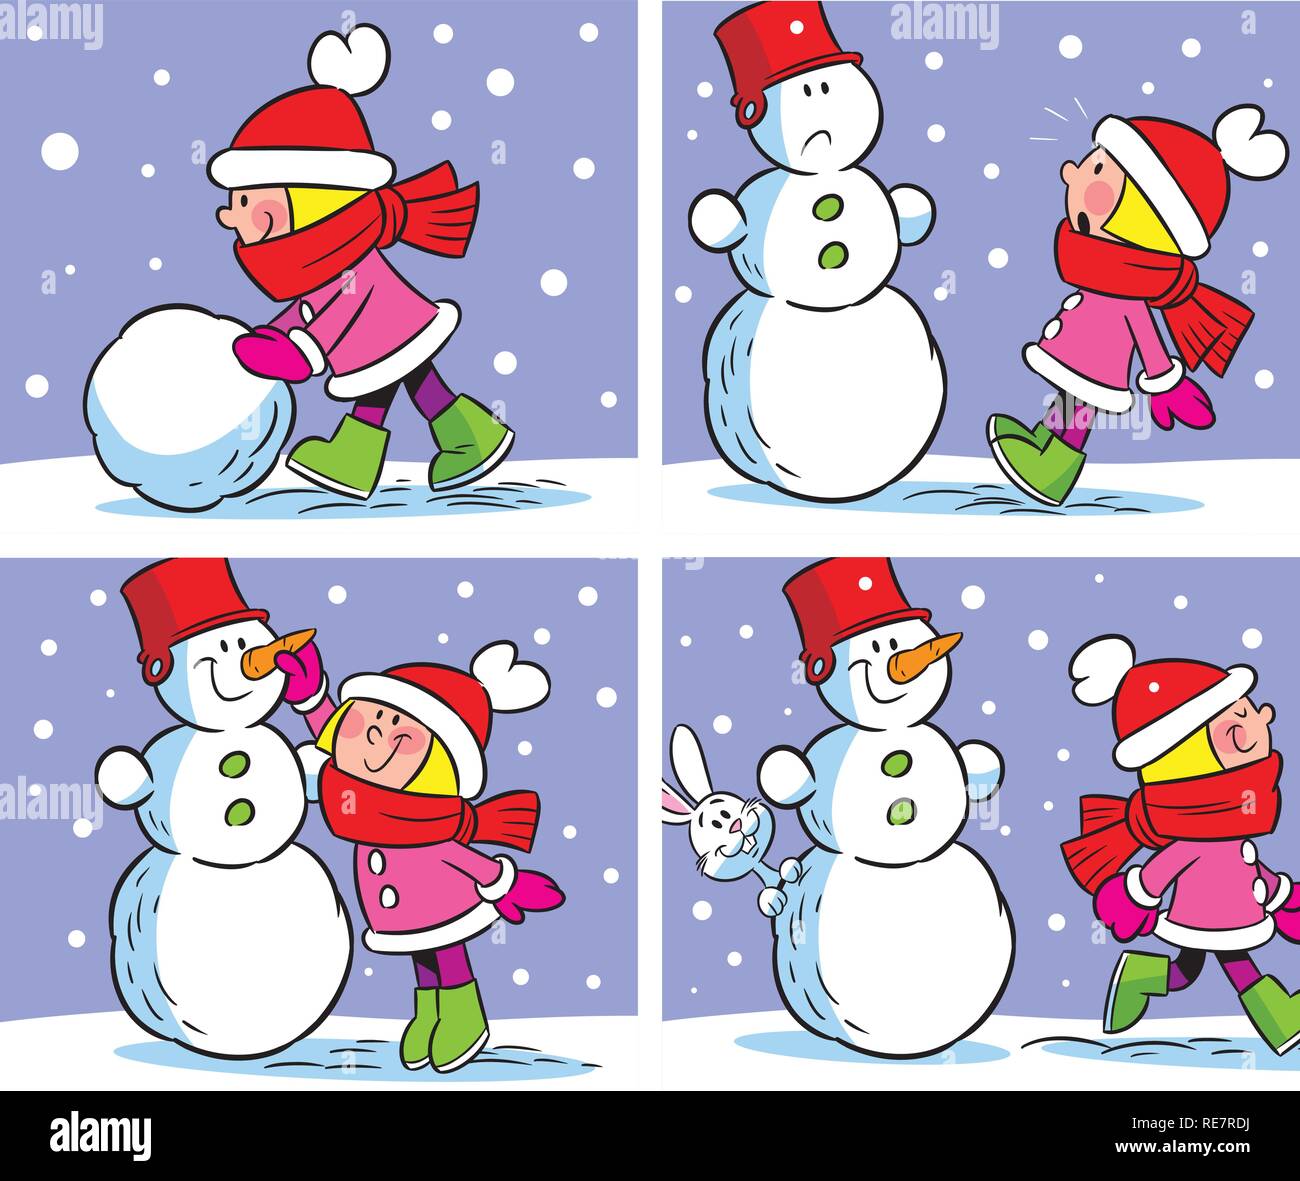 Die Abbildung zeigt ein paar Schritte von einem Mädchen, das macht ein Schneemann im Winter. Abbildung auf separaten Ebenen getan, im Stil von Comics. Stock Vektor